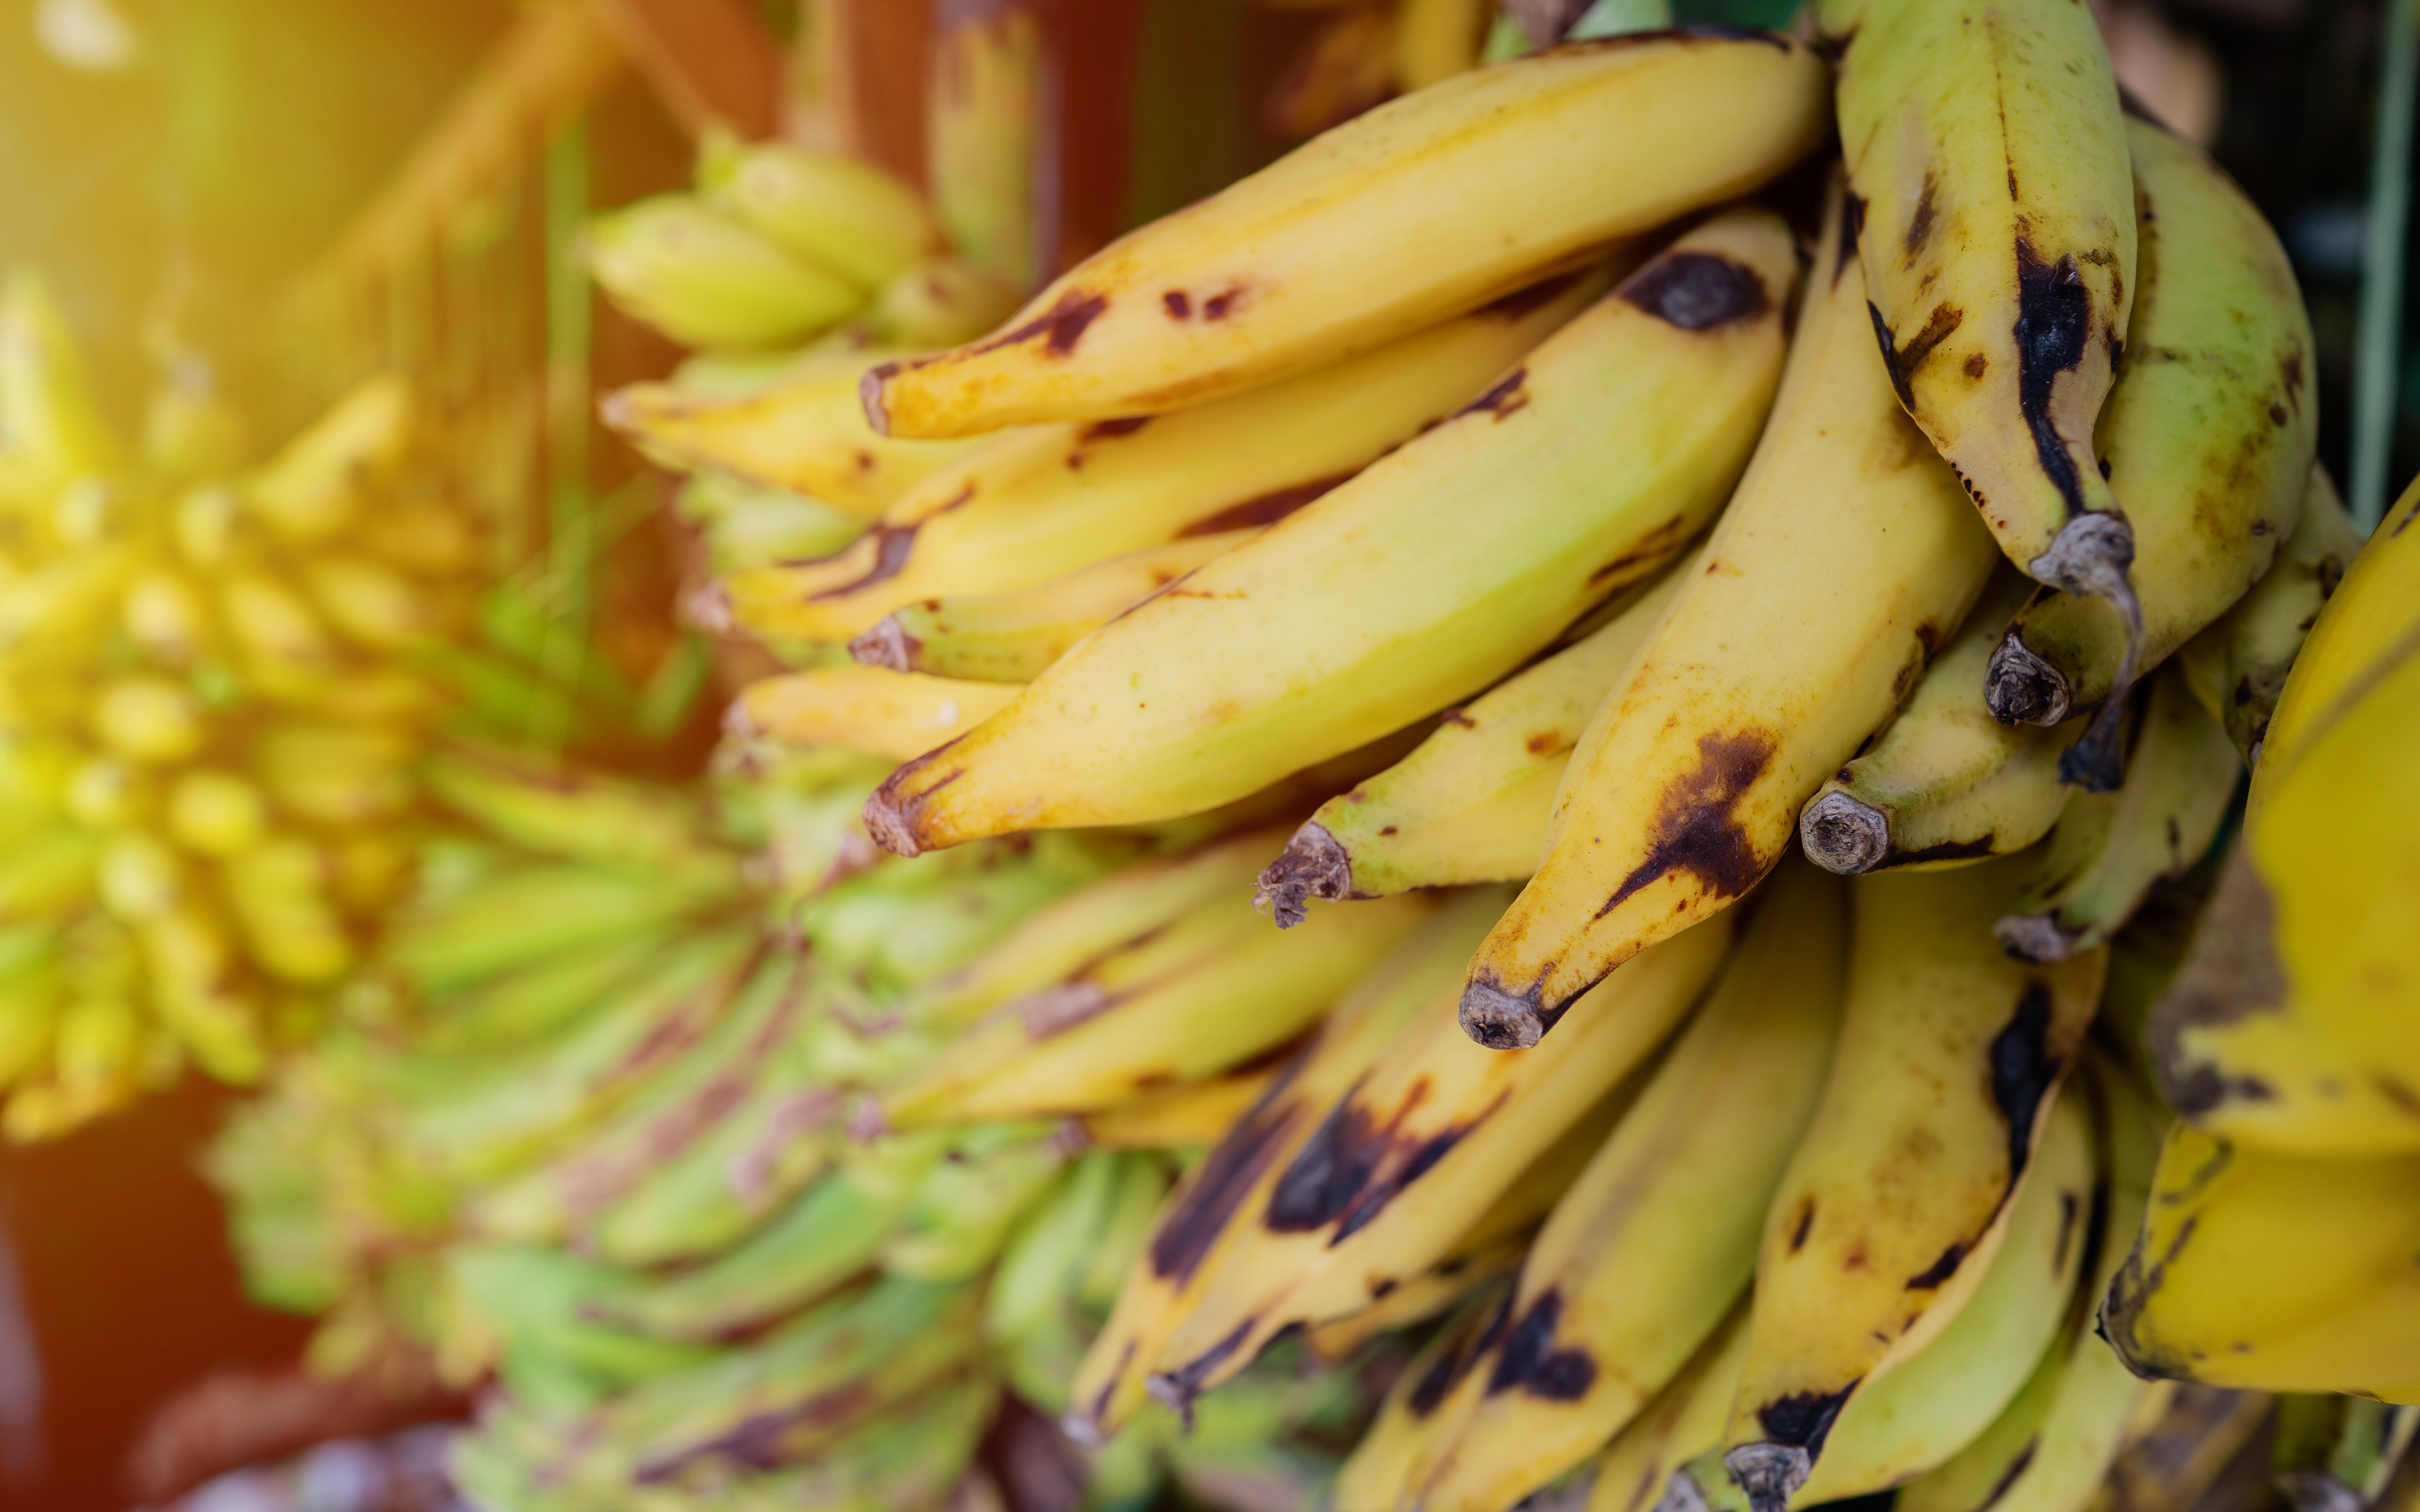     Bananes plantains : pas de trace d’Ethéphon en 2023 selon les services de l’Etat 

